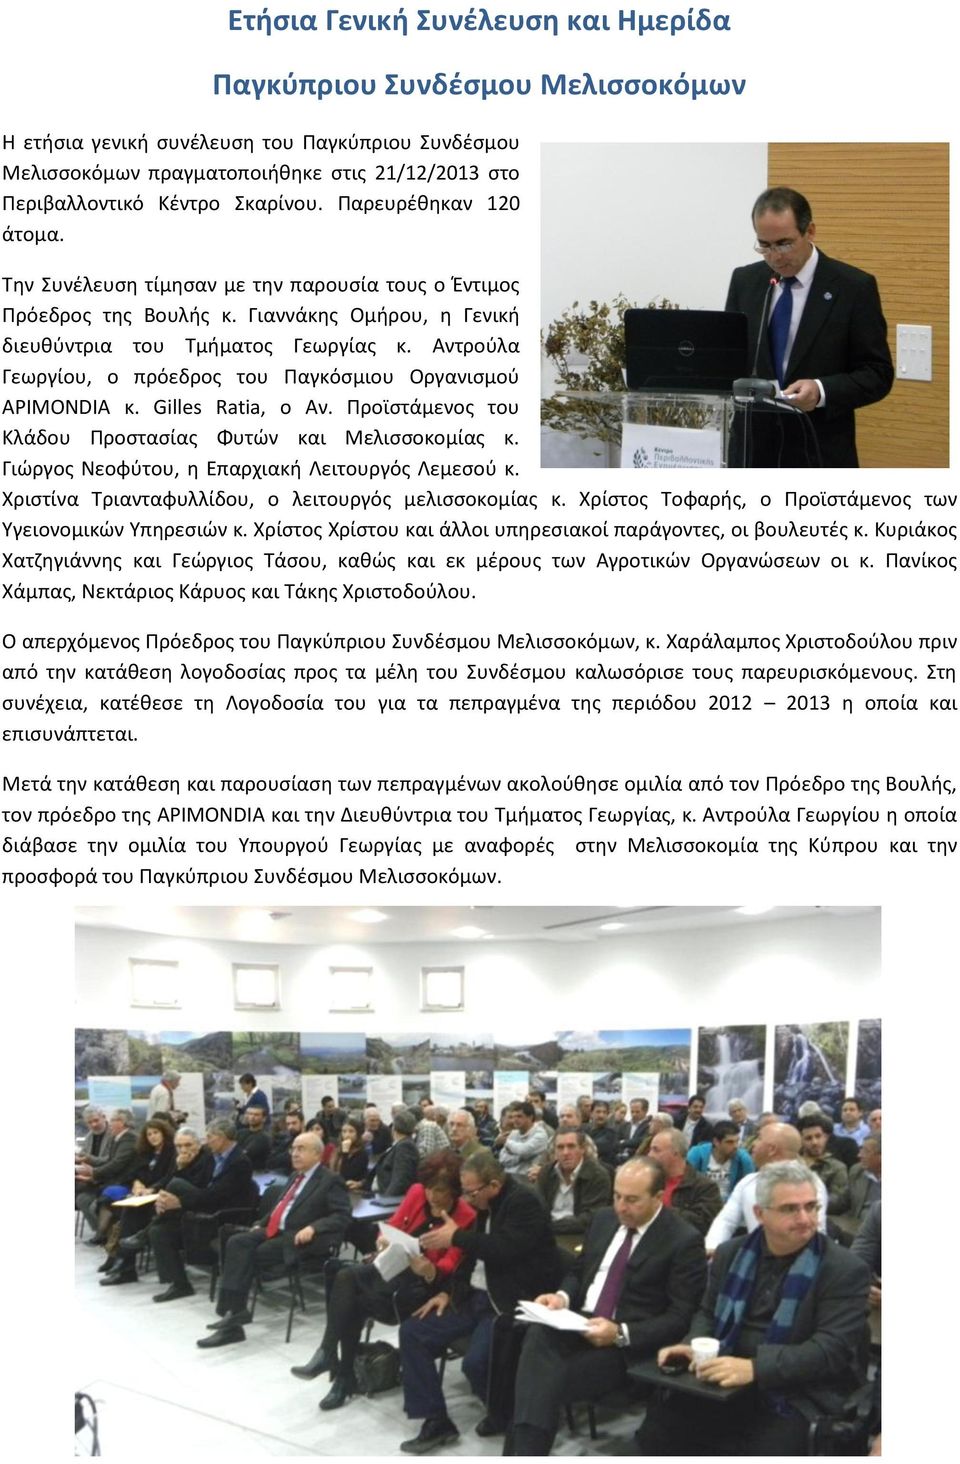 Αντρούλα Γεωργίου, ο πρόεδρος του Παγκόσμιου Οργανισμού APIMONDIA κ. Gilles Ratia, ο Αν. Προϊστάμενος του Κλάδου Προστασίας Φυτών και Μελισσοκομίας κ.